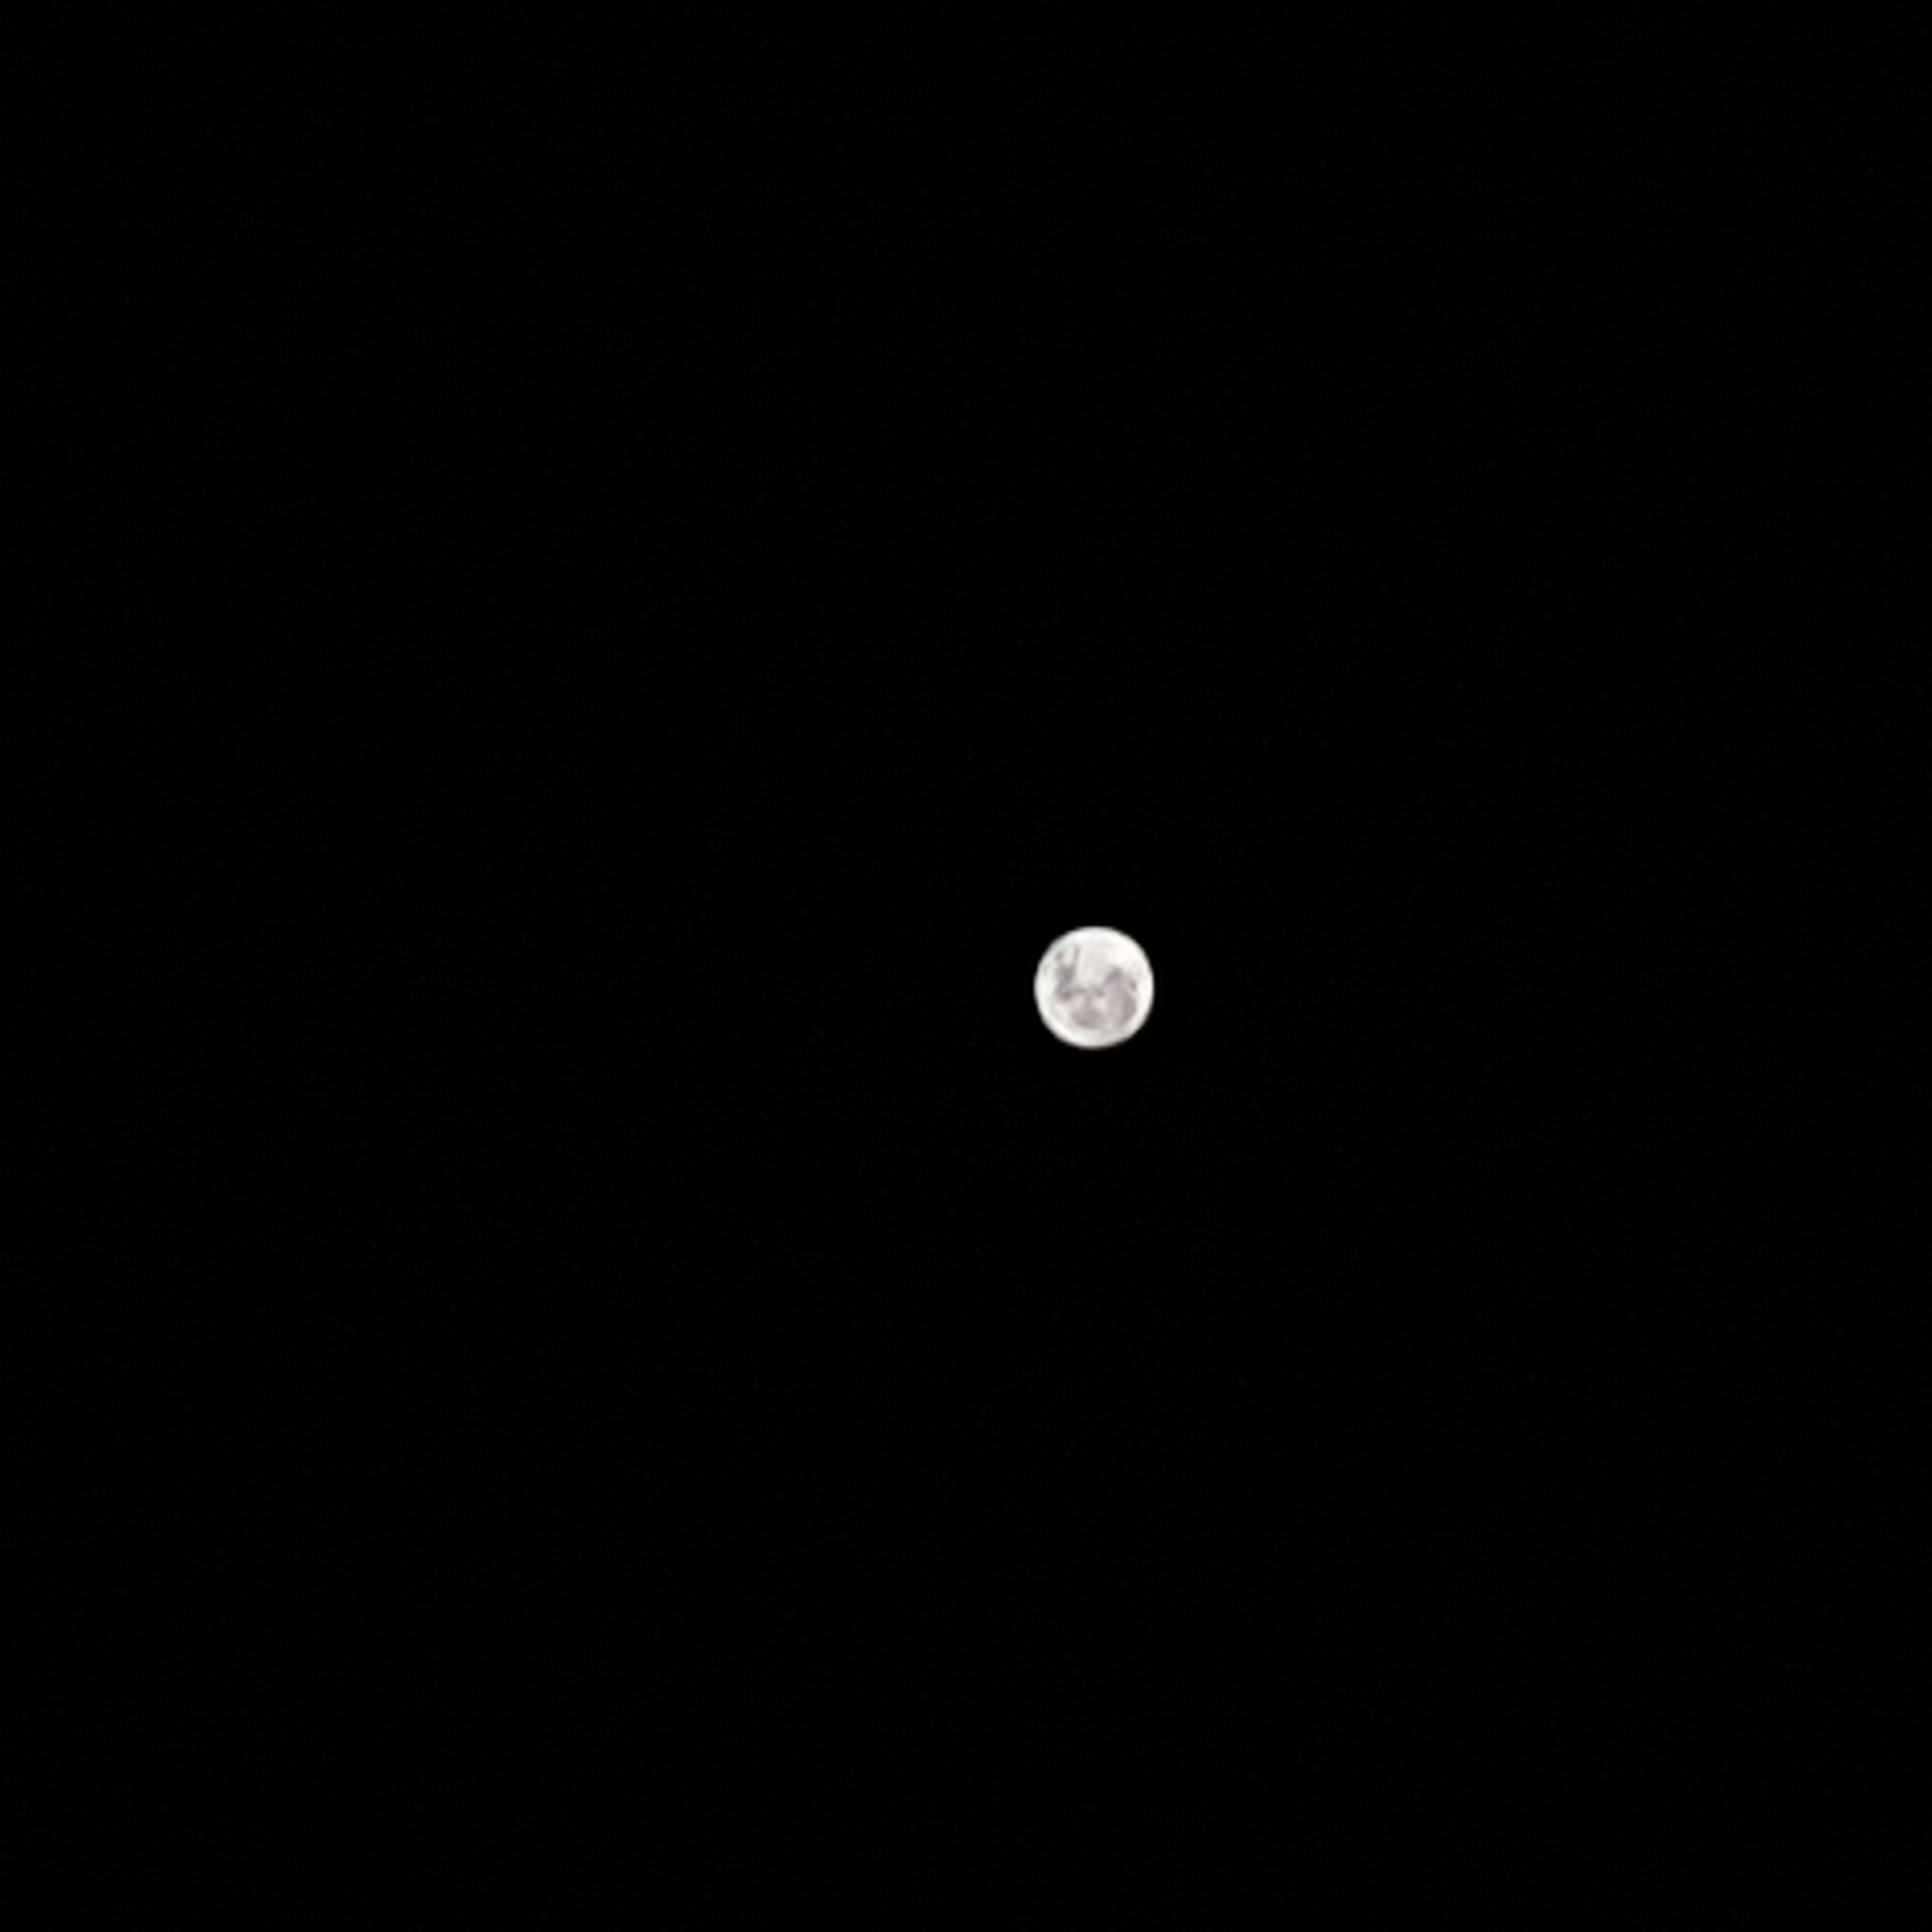 20191212_182809.jpg : 둥근 달